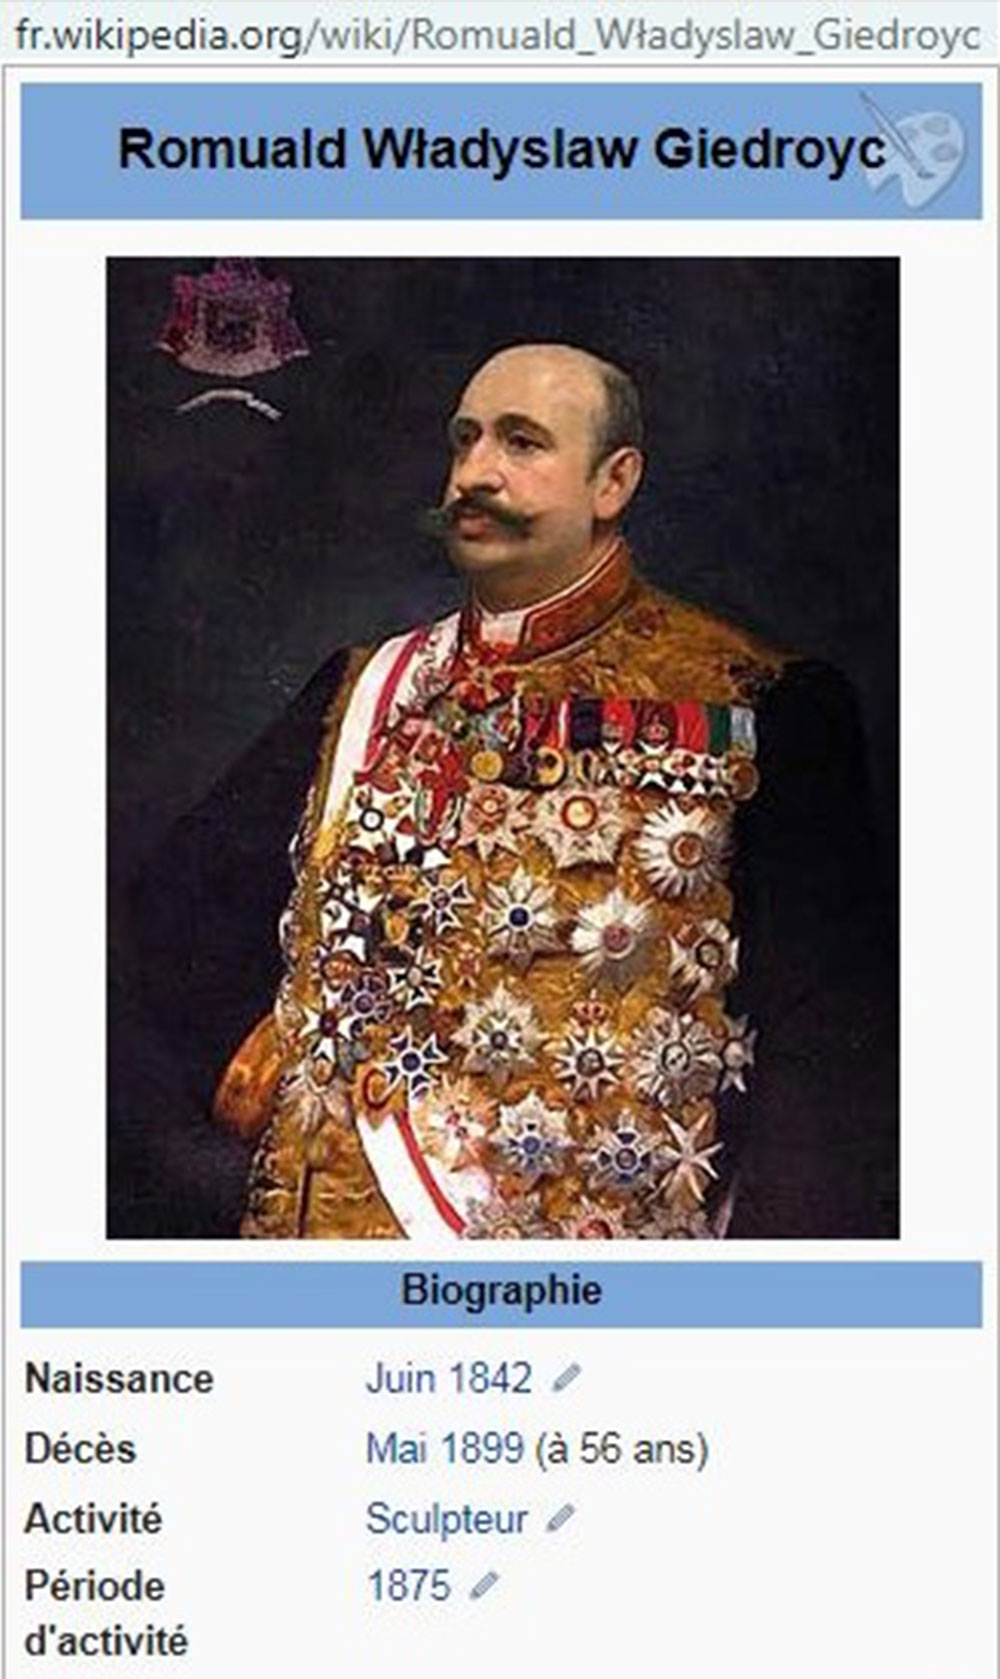 Страница, посвященная Ромуальду Владиславу Гедройцу, на французской версии Wikipedia, источник: fr.wikipedia.org